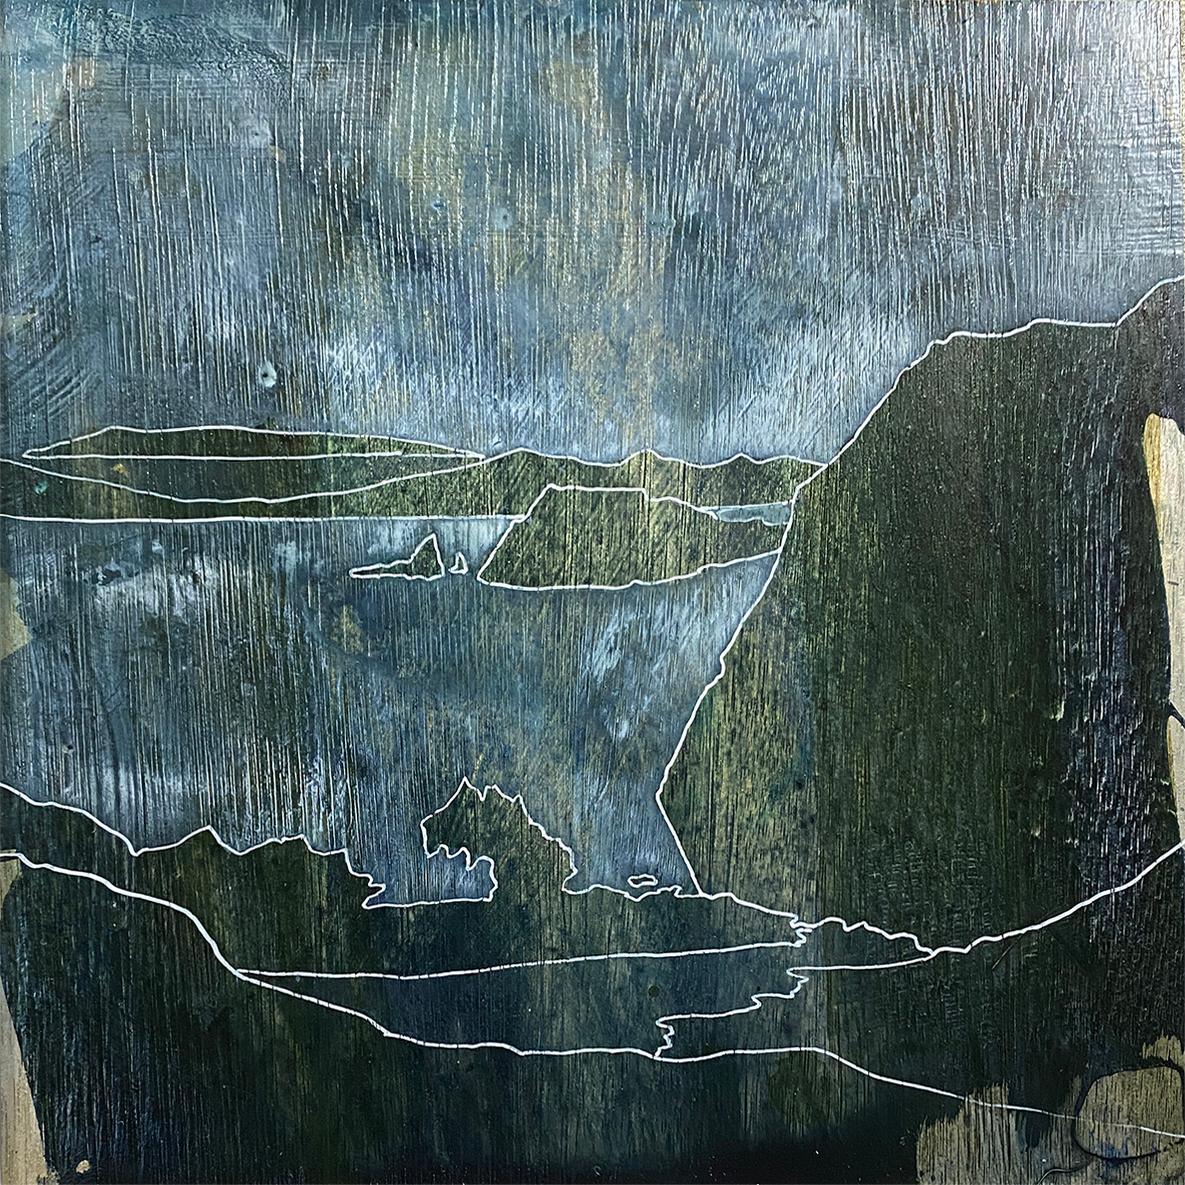 Landscape Painting Rebecca Tucker - The Loch, peinture de paysage écossais, Loch Art, peintures miniatures d'Écosse